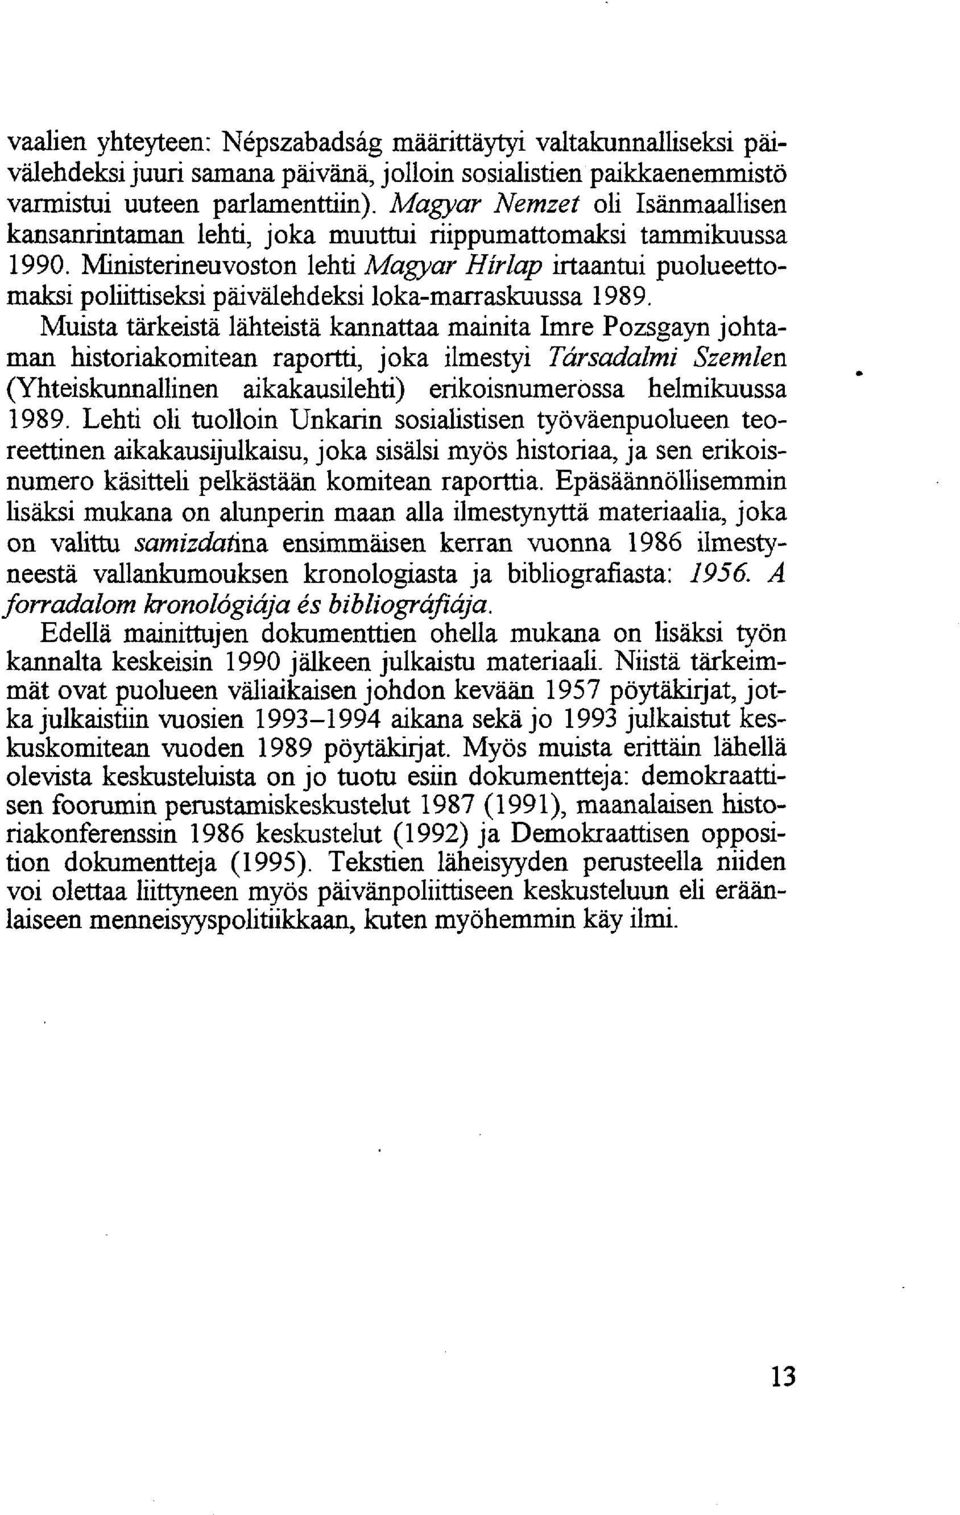 Ministerineuvoston lehti Magyar Hírlap irtaantui puolueettomaksi poliittiseksi päivälehdeksi loka-marraskuussa 1989.